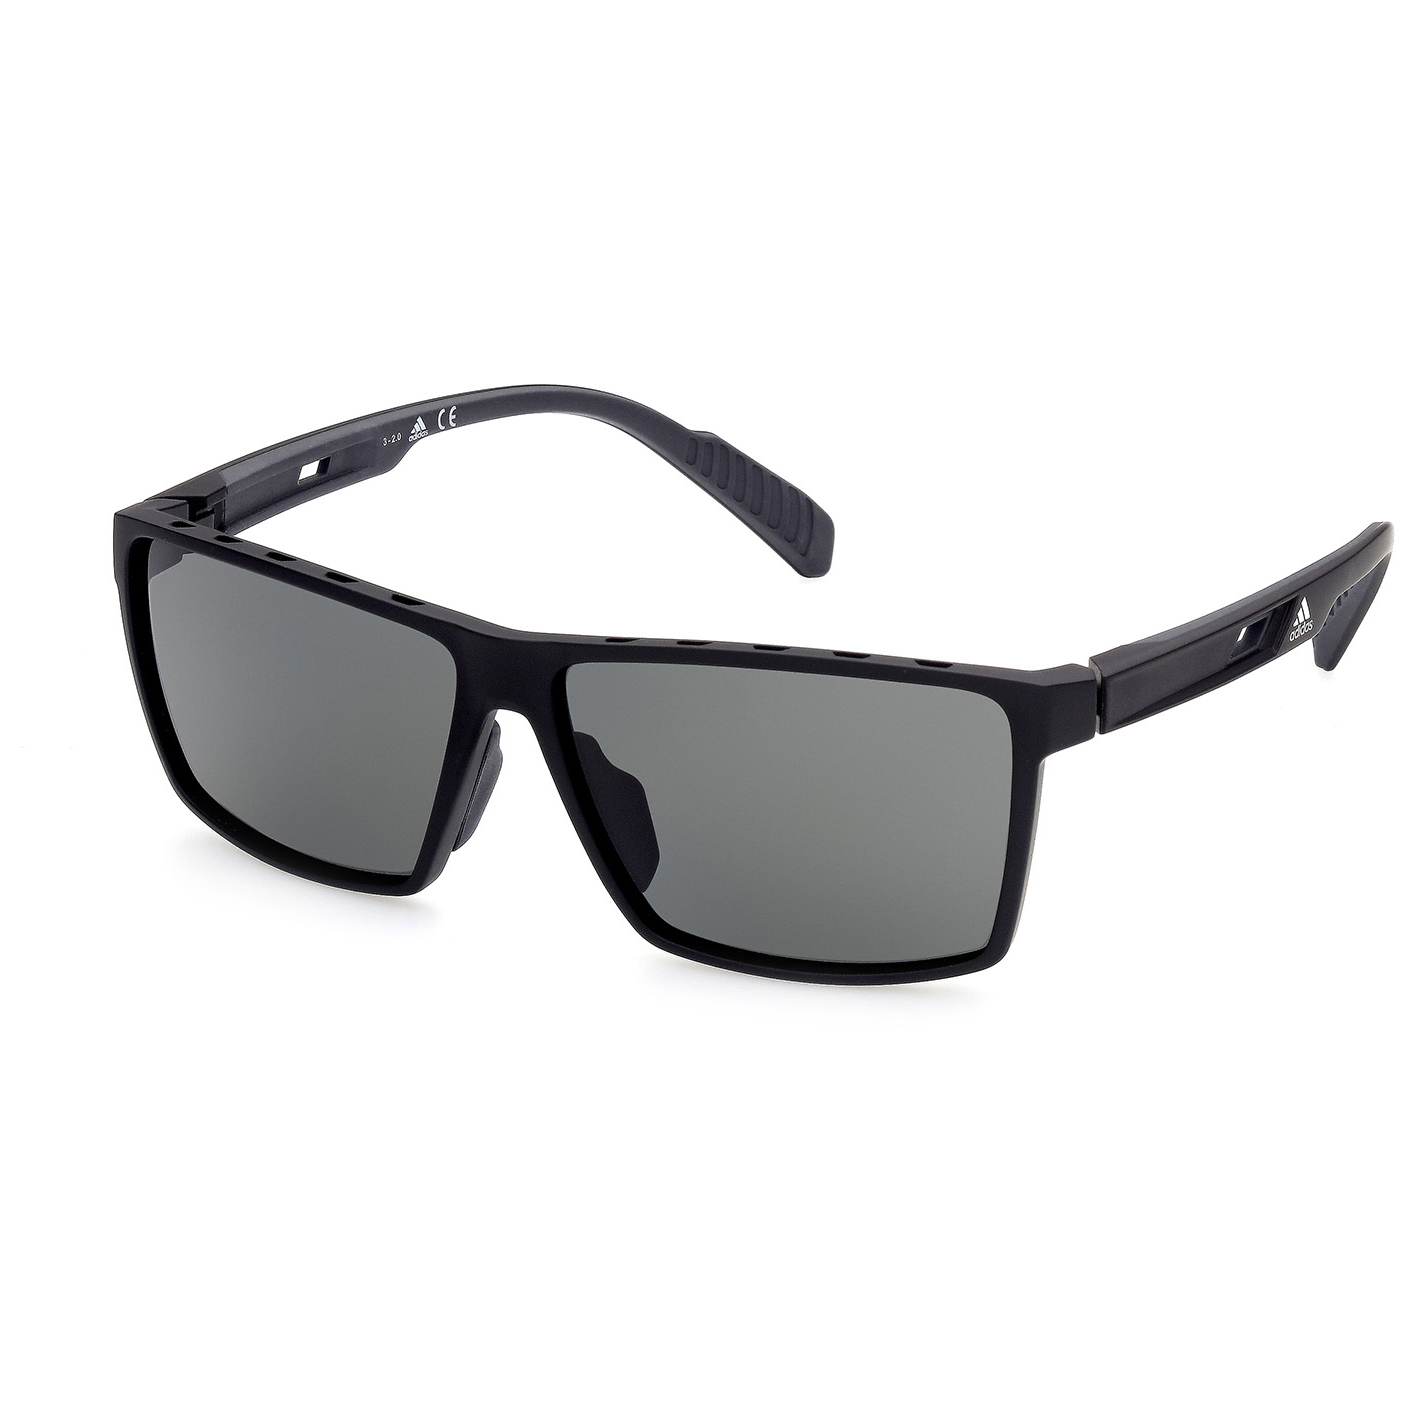 Солнцезащитные очки Adidas SP0034 Polarized Cat 3, матовый черный очки солнцезащитные stylemark polarized l1504a